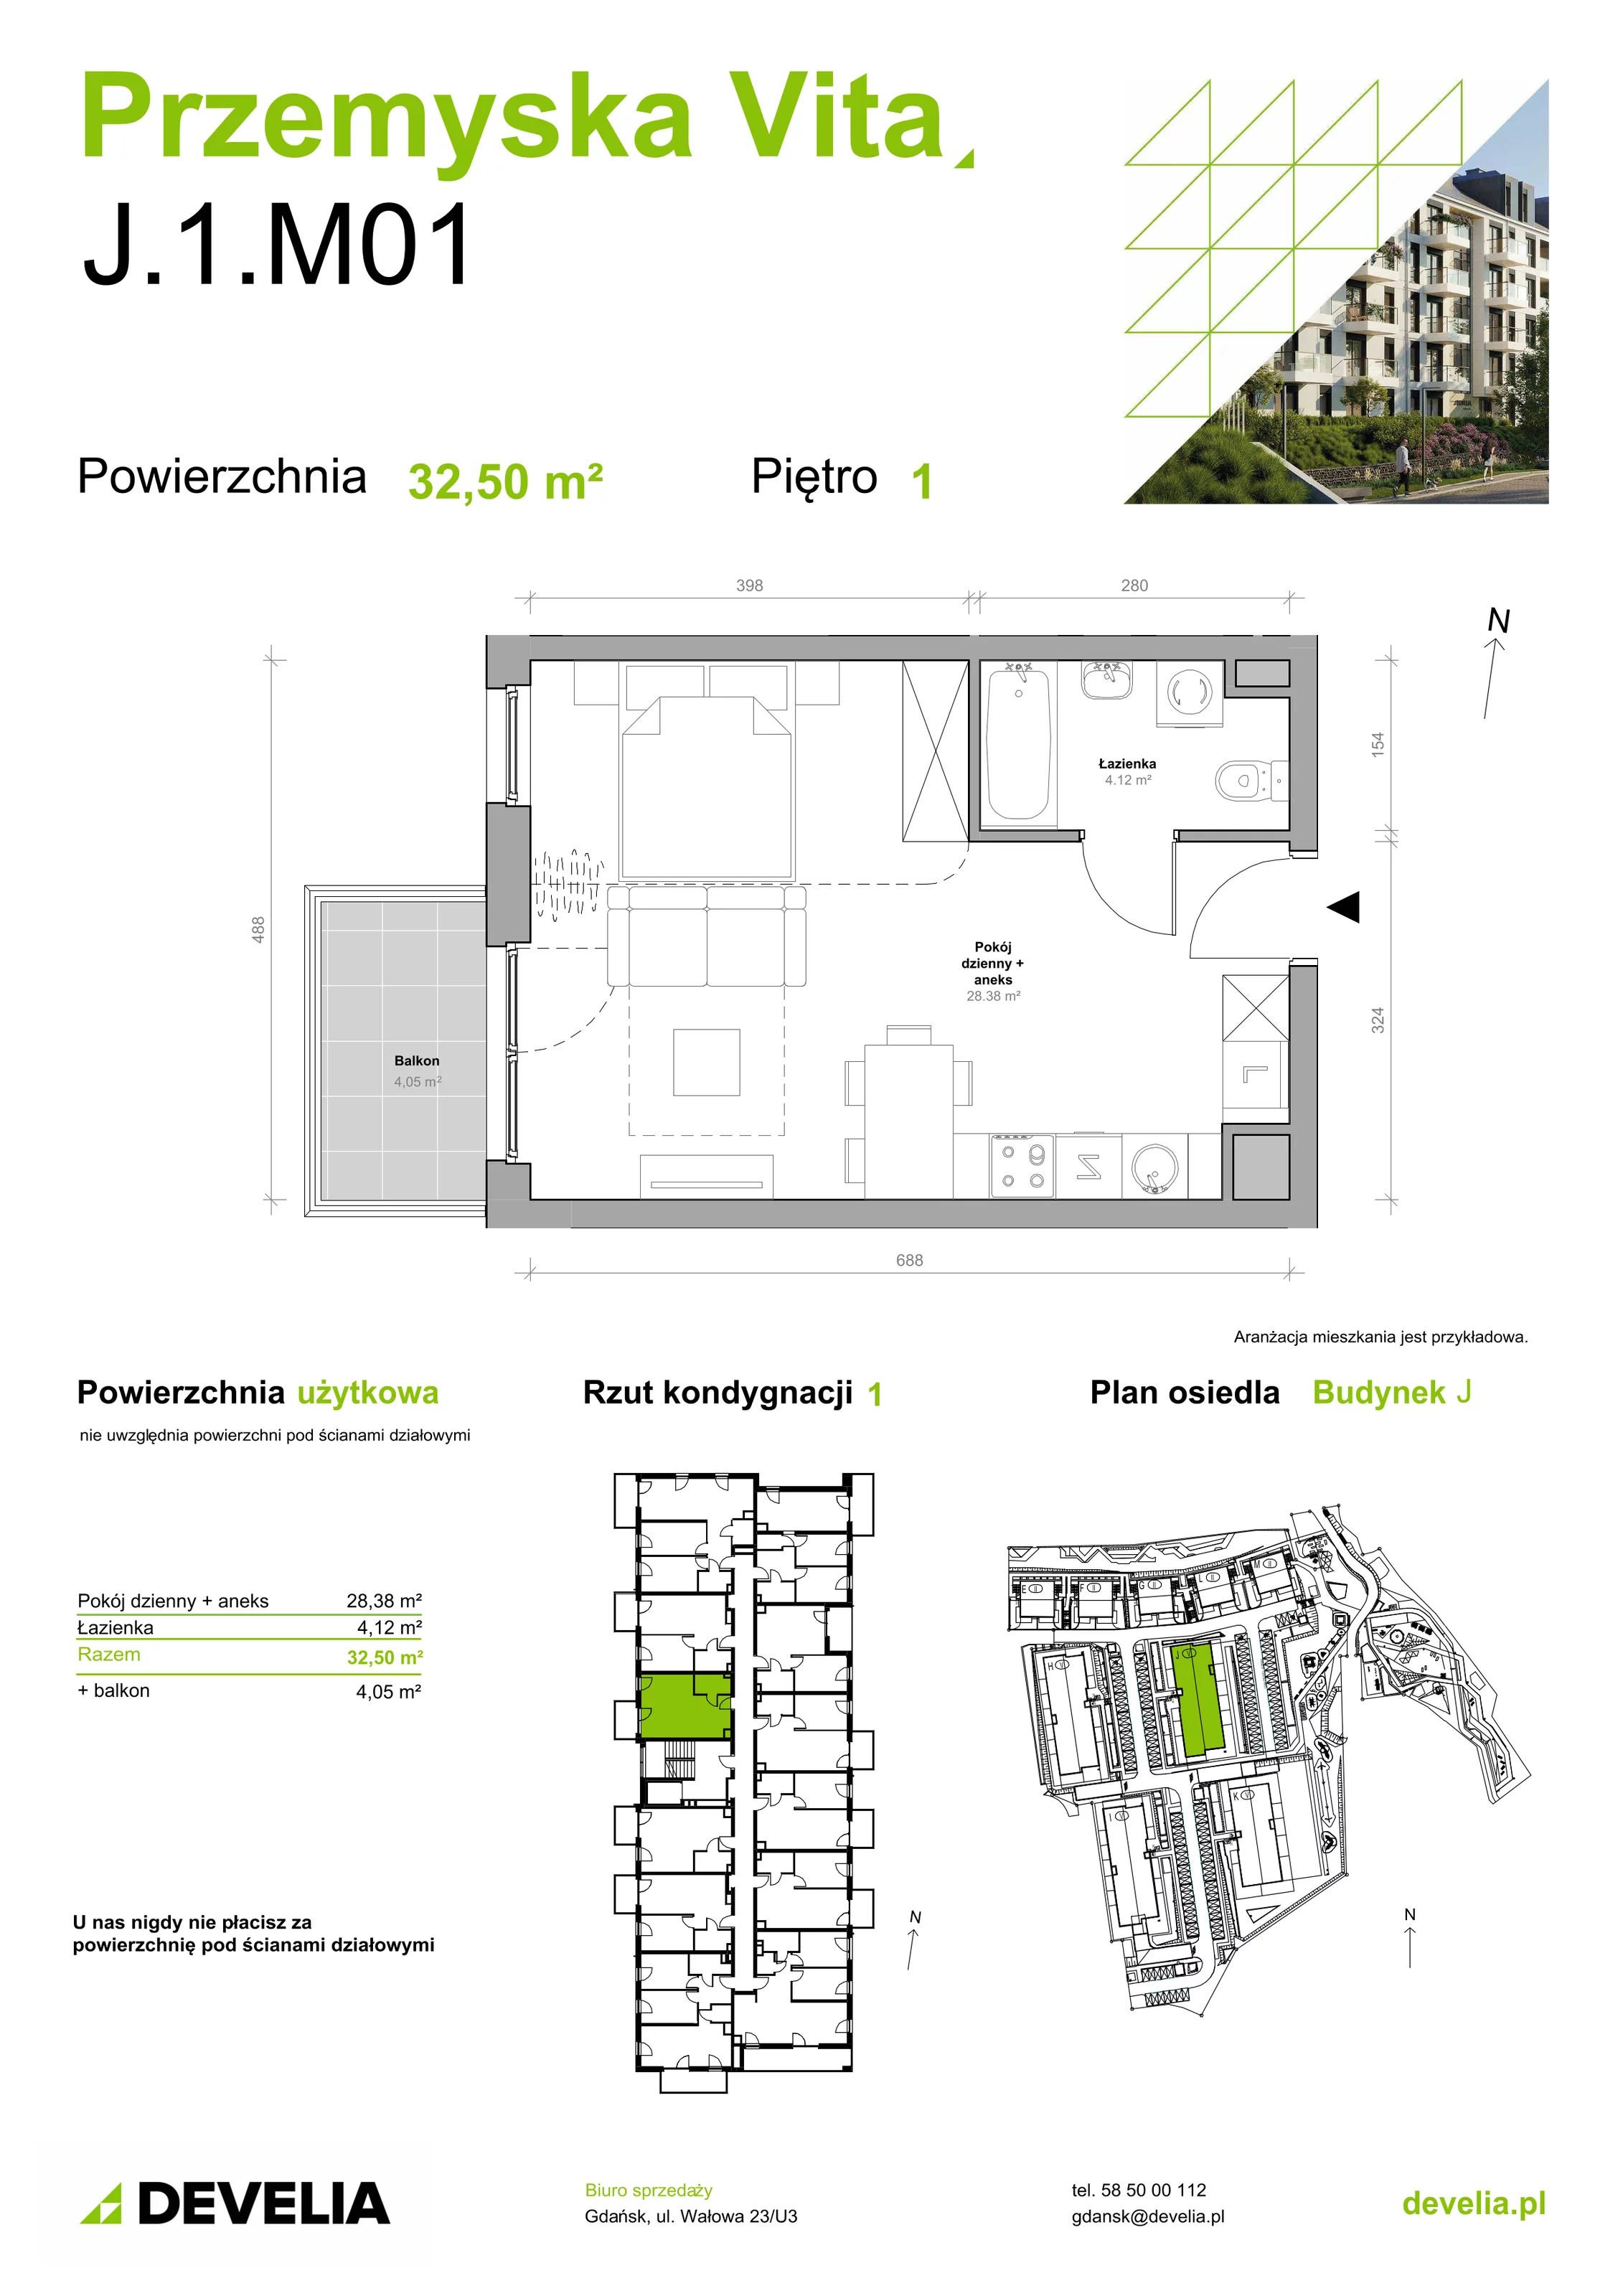 Mieszkanie 32,50 m², piętro 1, oferta nr J.1.M01, Przemyska Vita, Gdańsk, Ujeścisko-Łostowice, Ujeścisko, ul. Przemyska 37